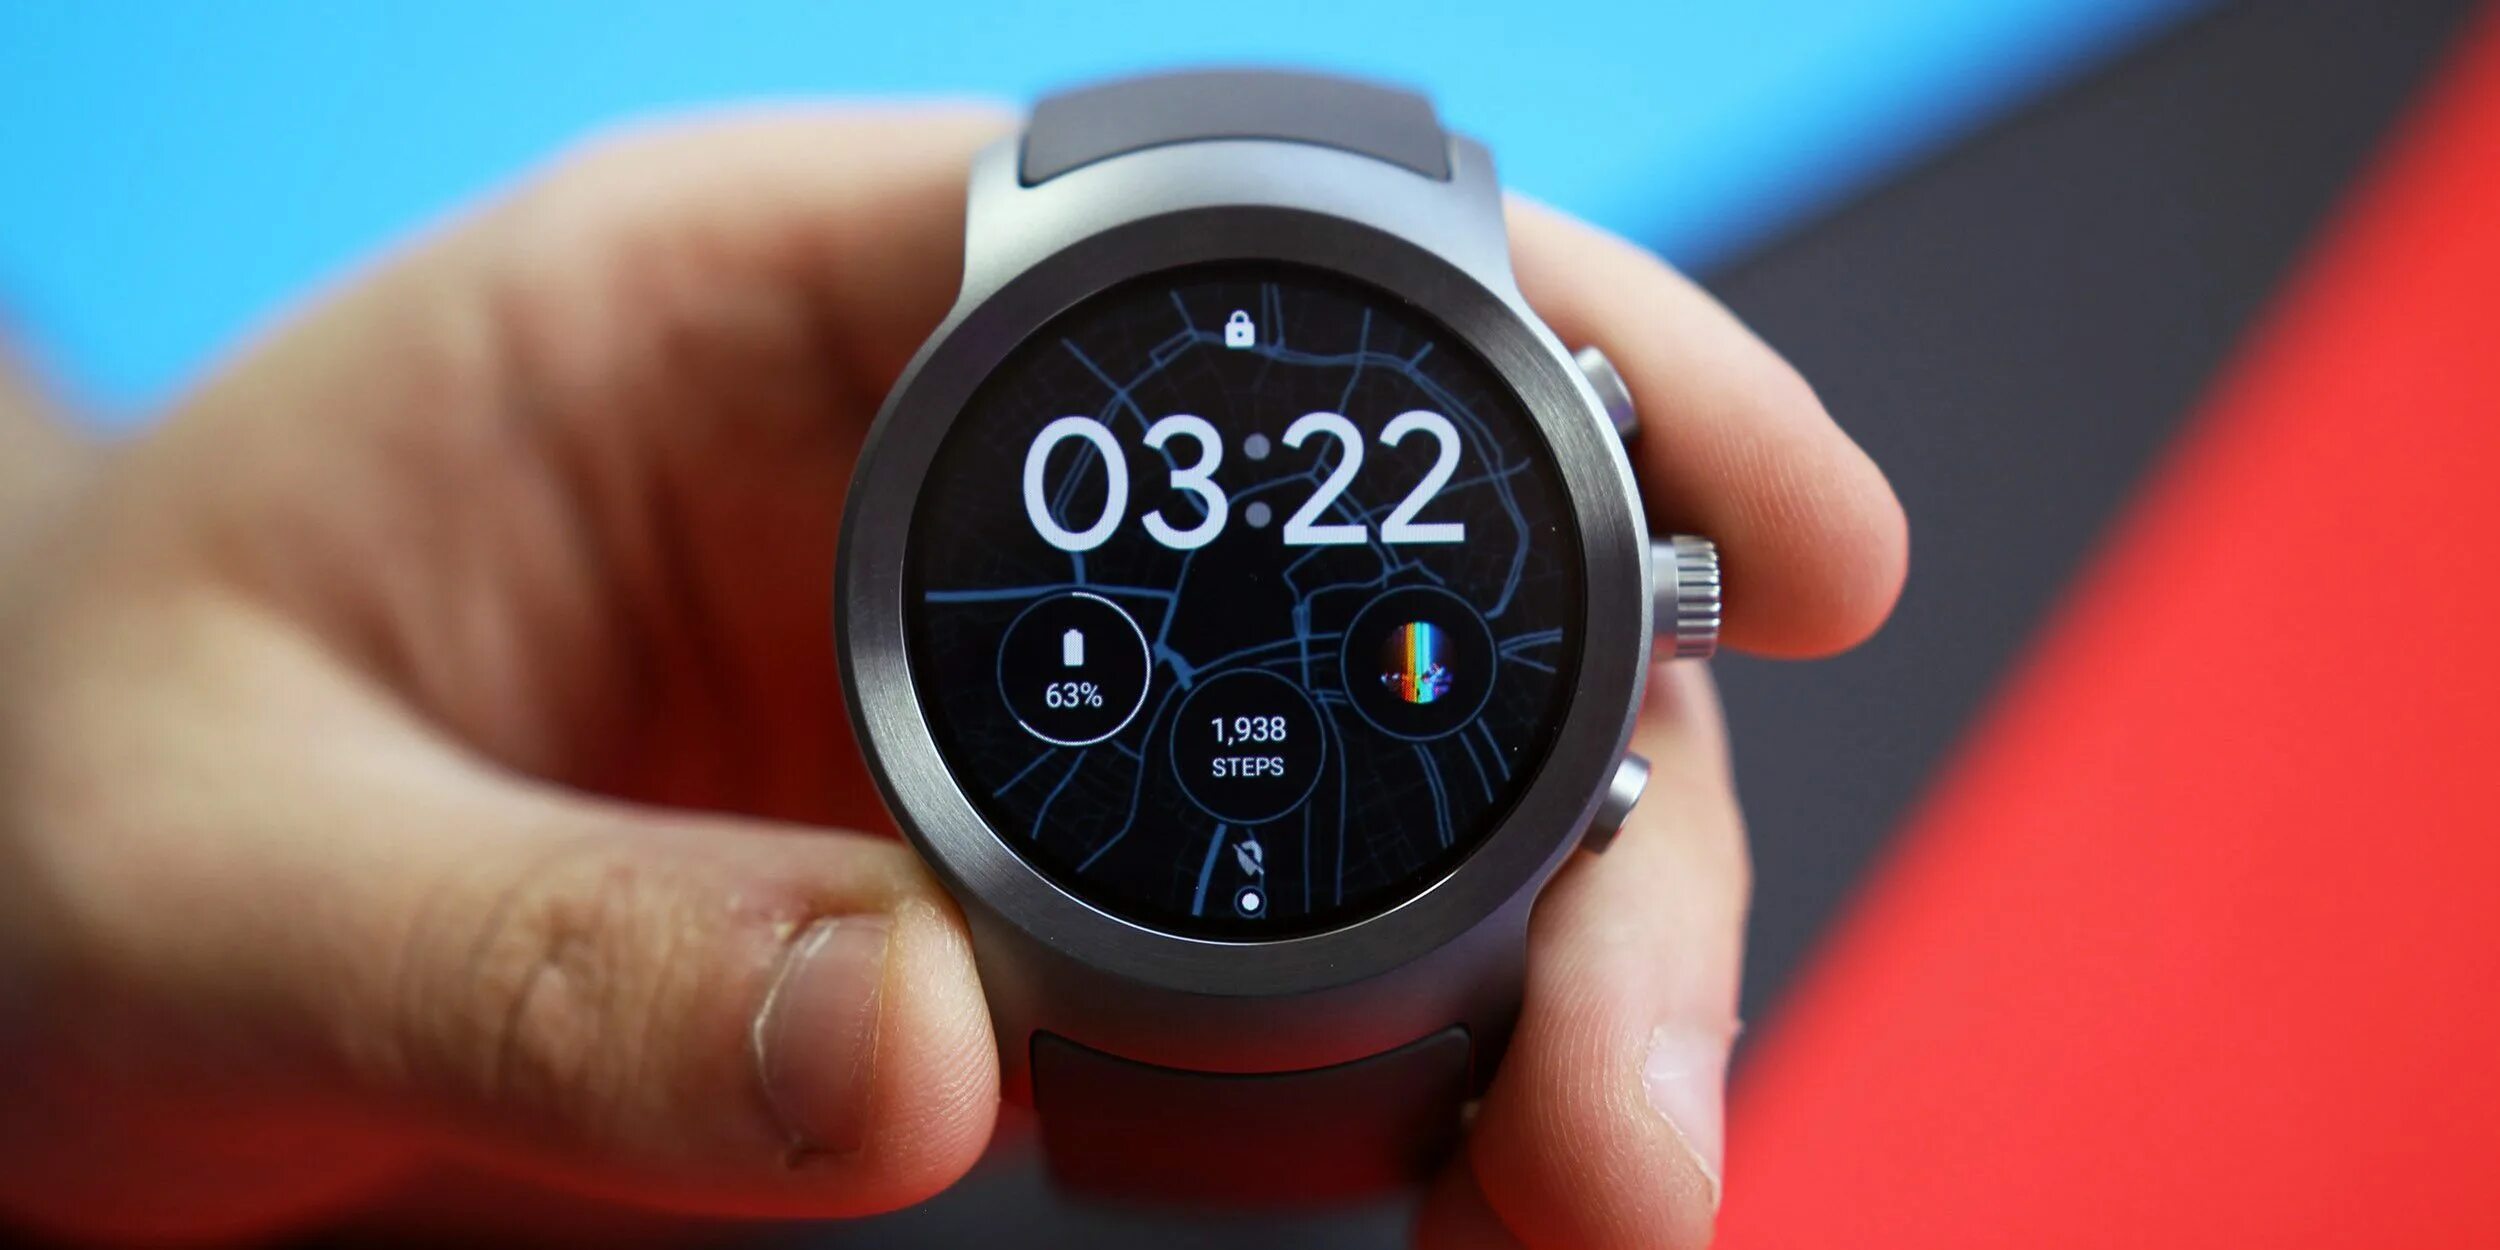 Wear os watches. Tizen os смарт часы. Android Wear часы. Смарт часы на базе Android Wear. Wear os часы.